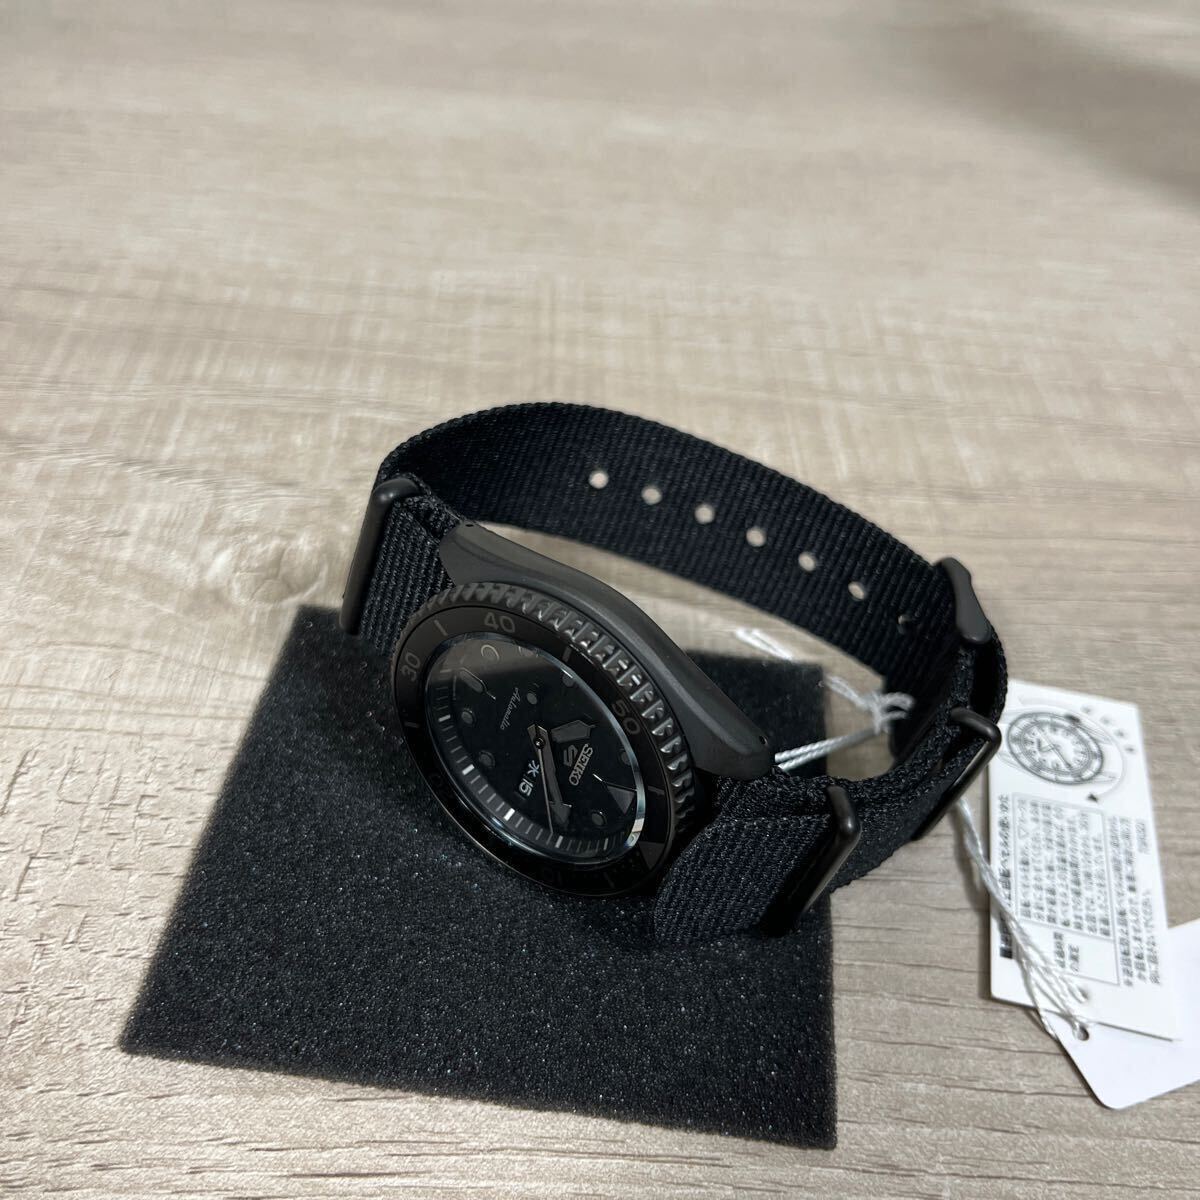 1 иен старт прямые продажи новый товар не использовался Seiko 5 спорт сделано в Японии самозаводящиеся часы автоматический ограниченная модель наручные часы SBSA025 SEIKO Street все черный 